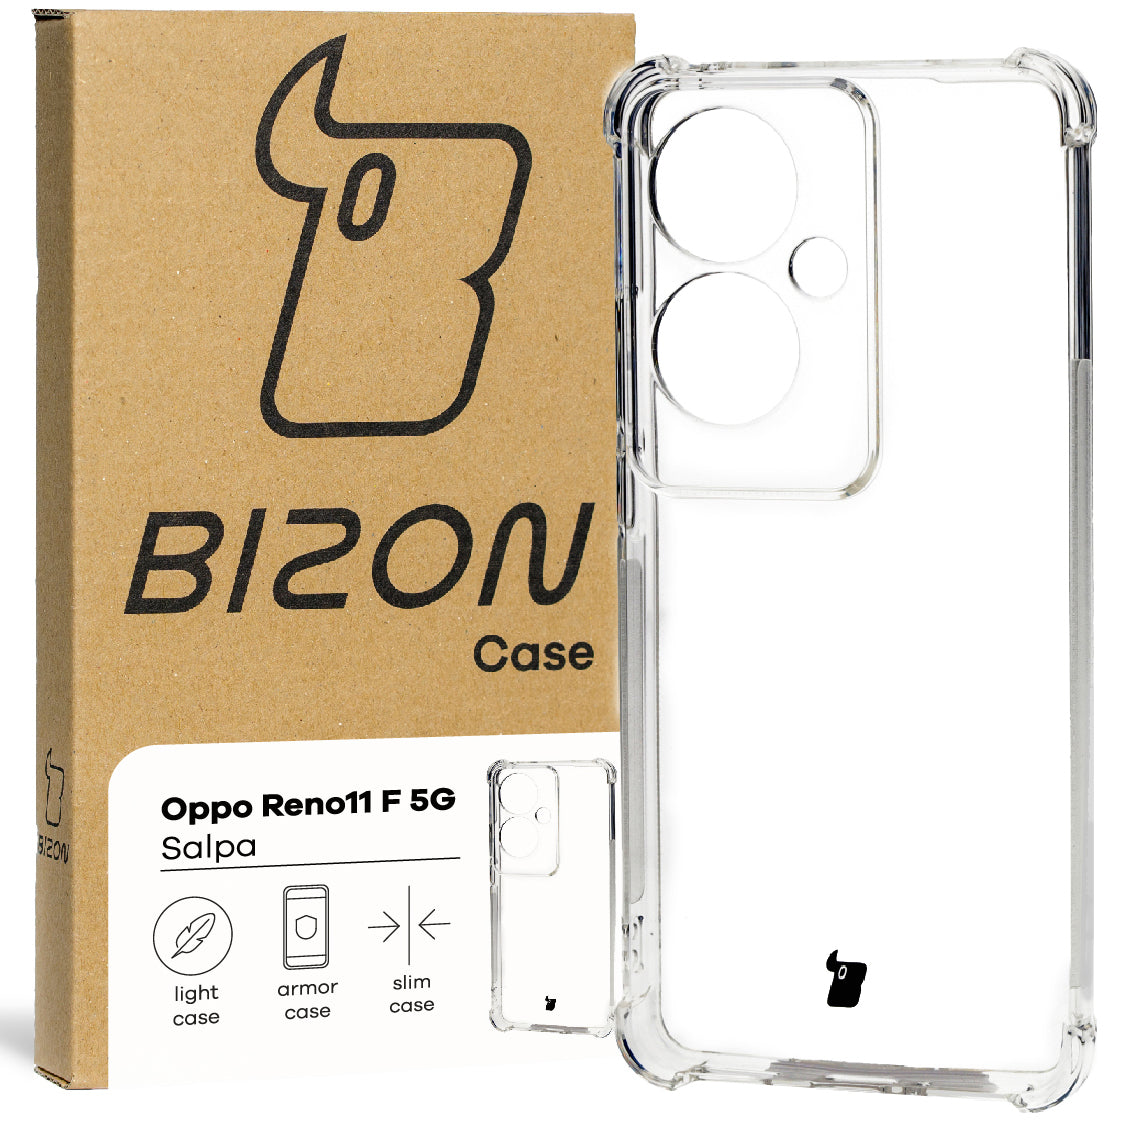 Schutzhülle für Oppo Reno11 F 5G, Bizon Case Salpa, Transparent